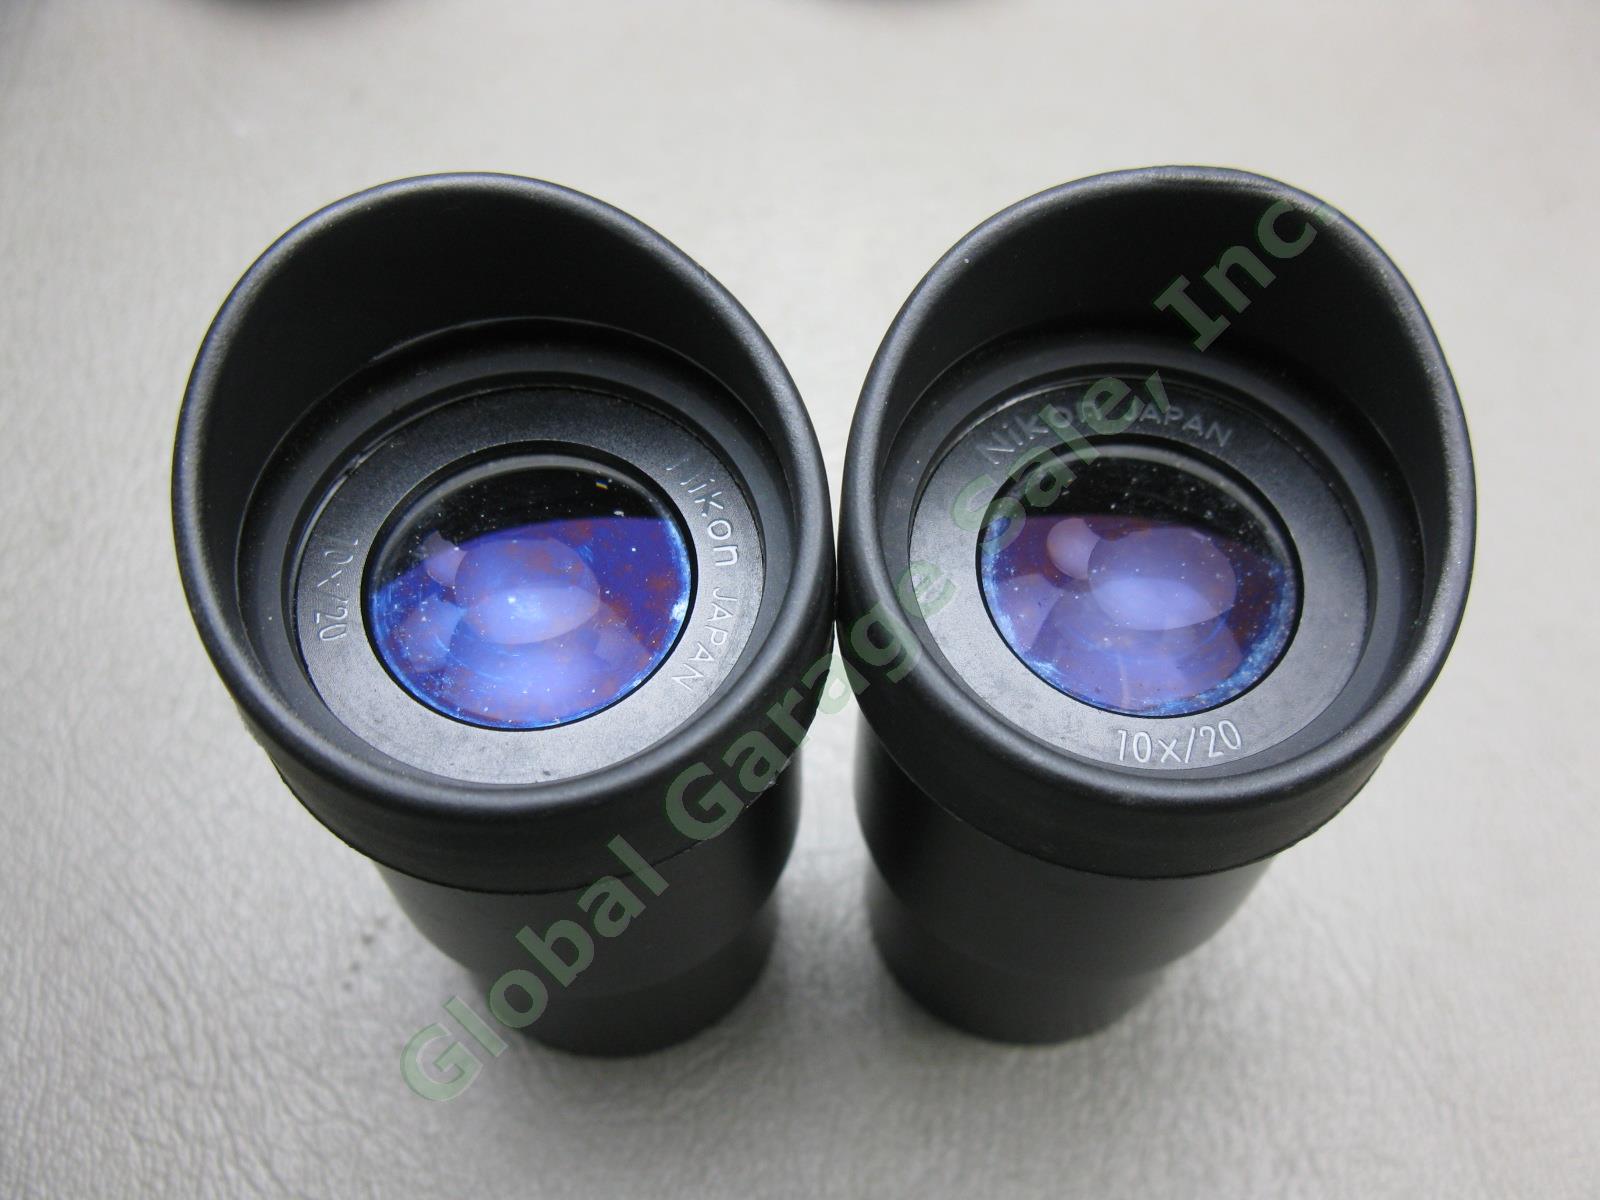 Nikon OBJ.2x Binocular Microscope W/ 10x/20 Eyepieces Stand #217542 No Reserve! 2